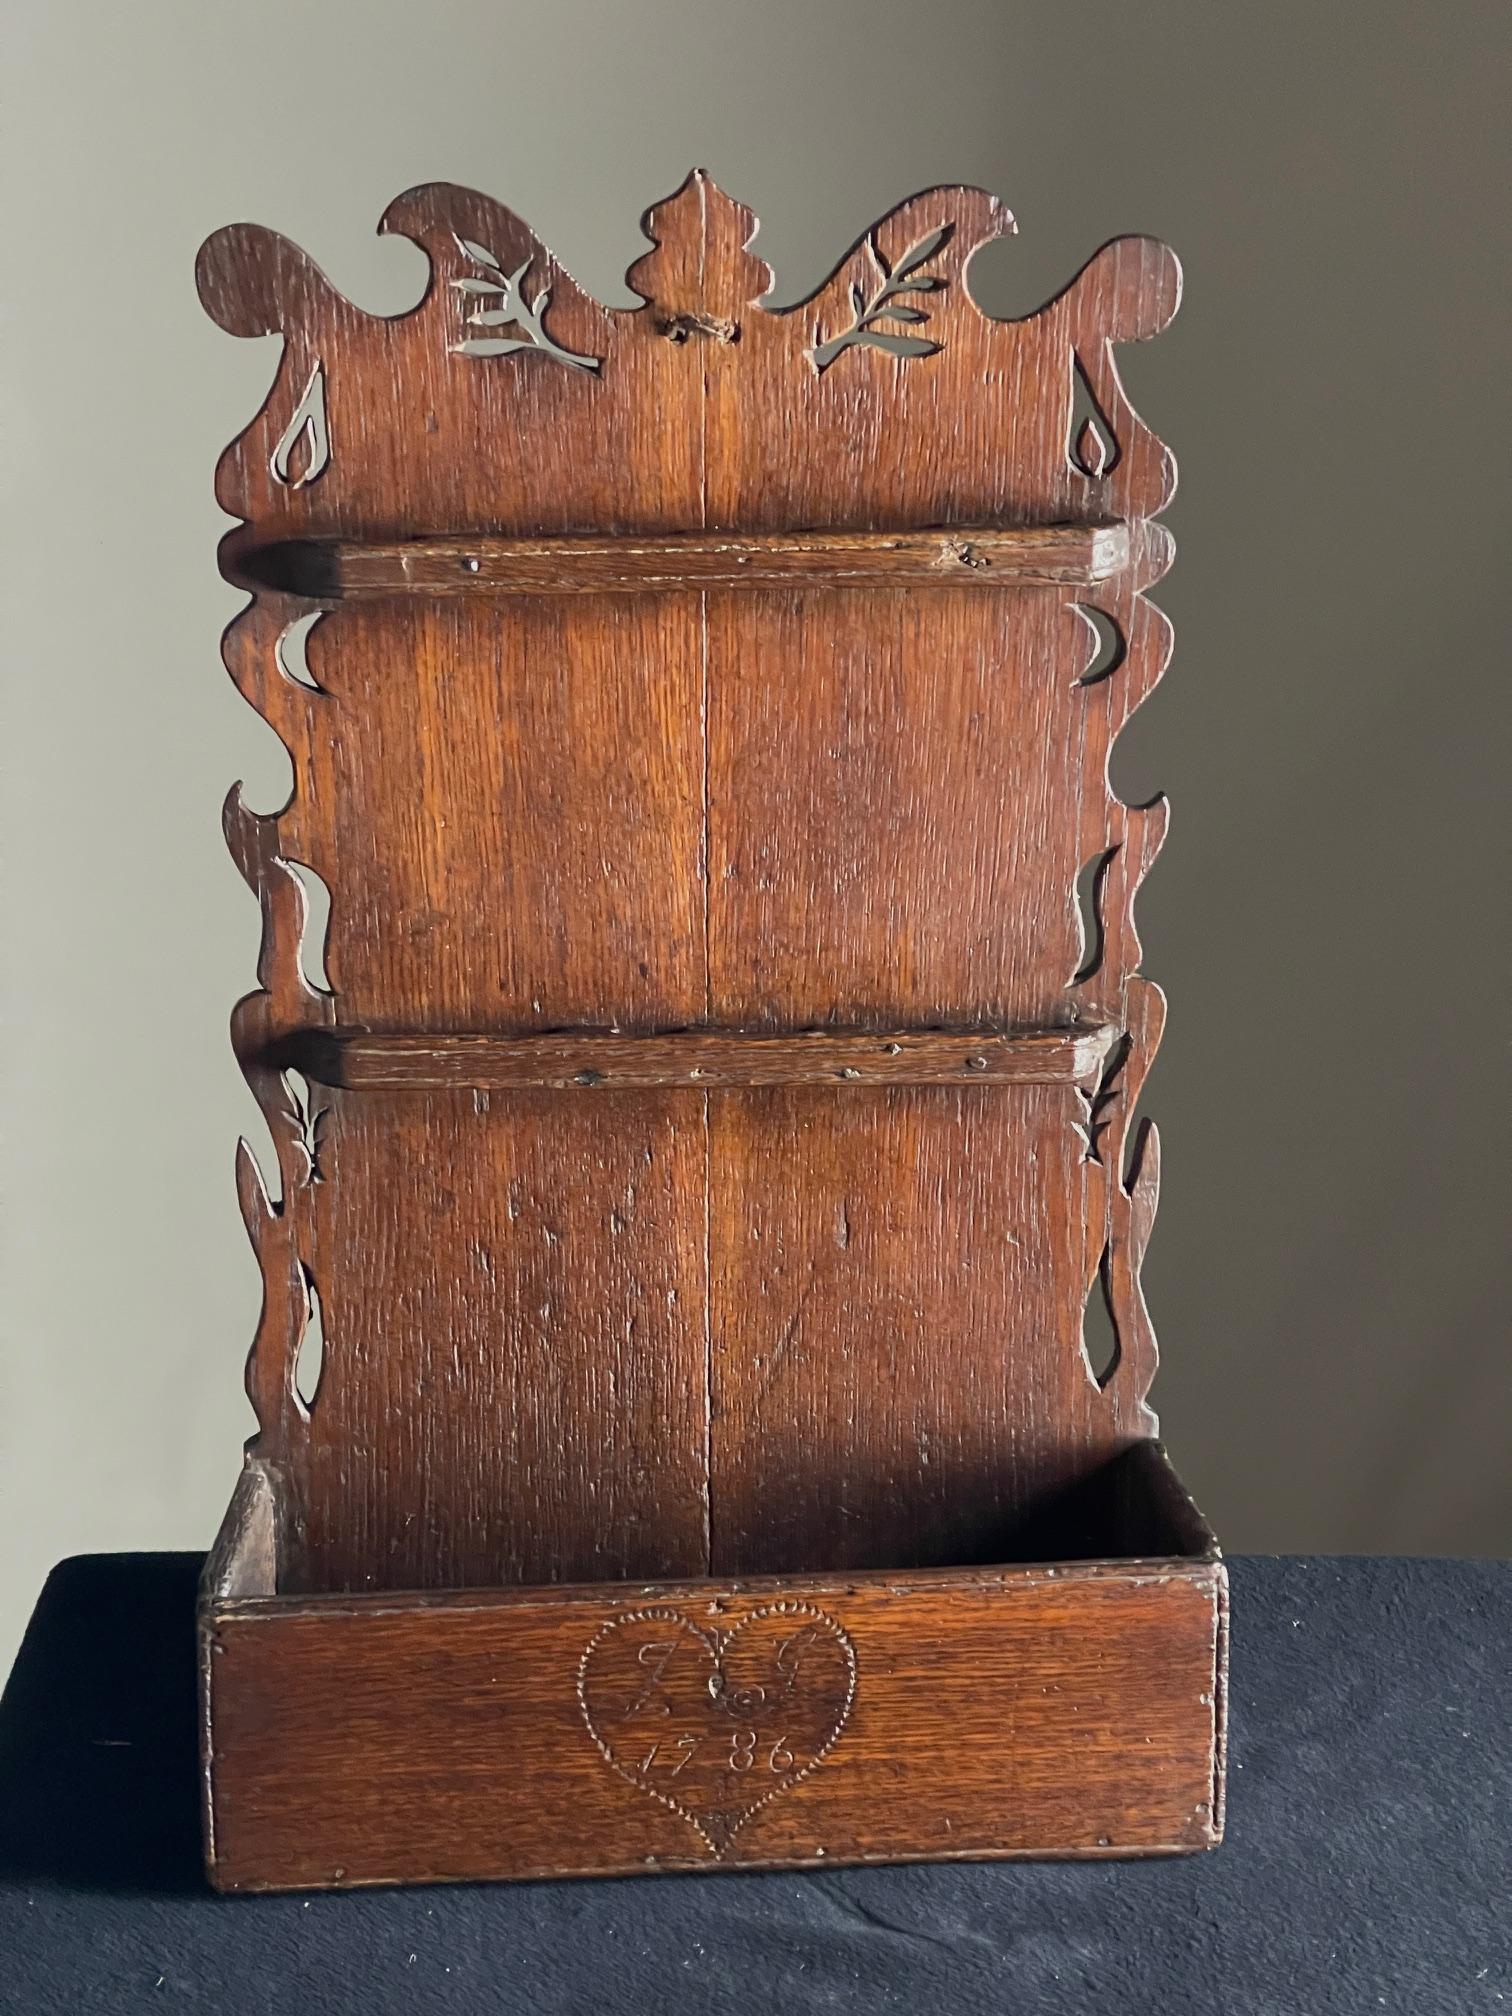 OAK 18. Jahrhundert Löffelgestell

1786 datiertes Löffelgestell aus Eichenholz mit geformten Seiten und interessanten Durchbrüchen.

Abmessungen 64 cm hoch 38 cm breit 14 cm tief